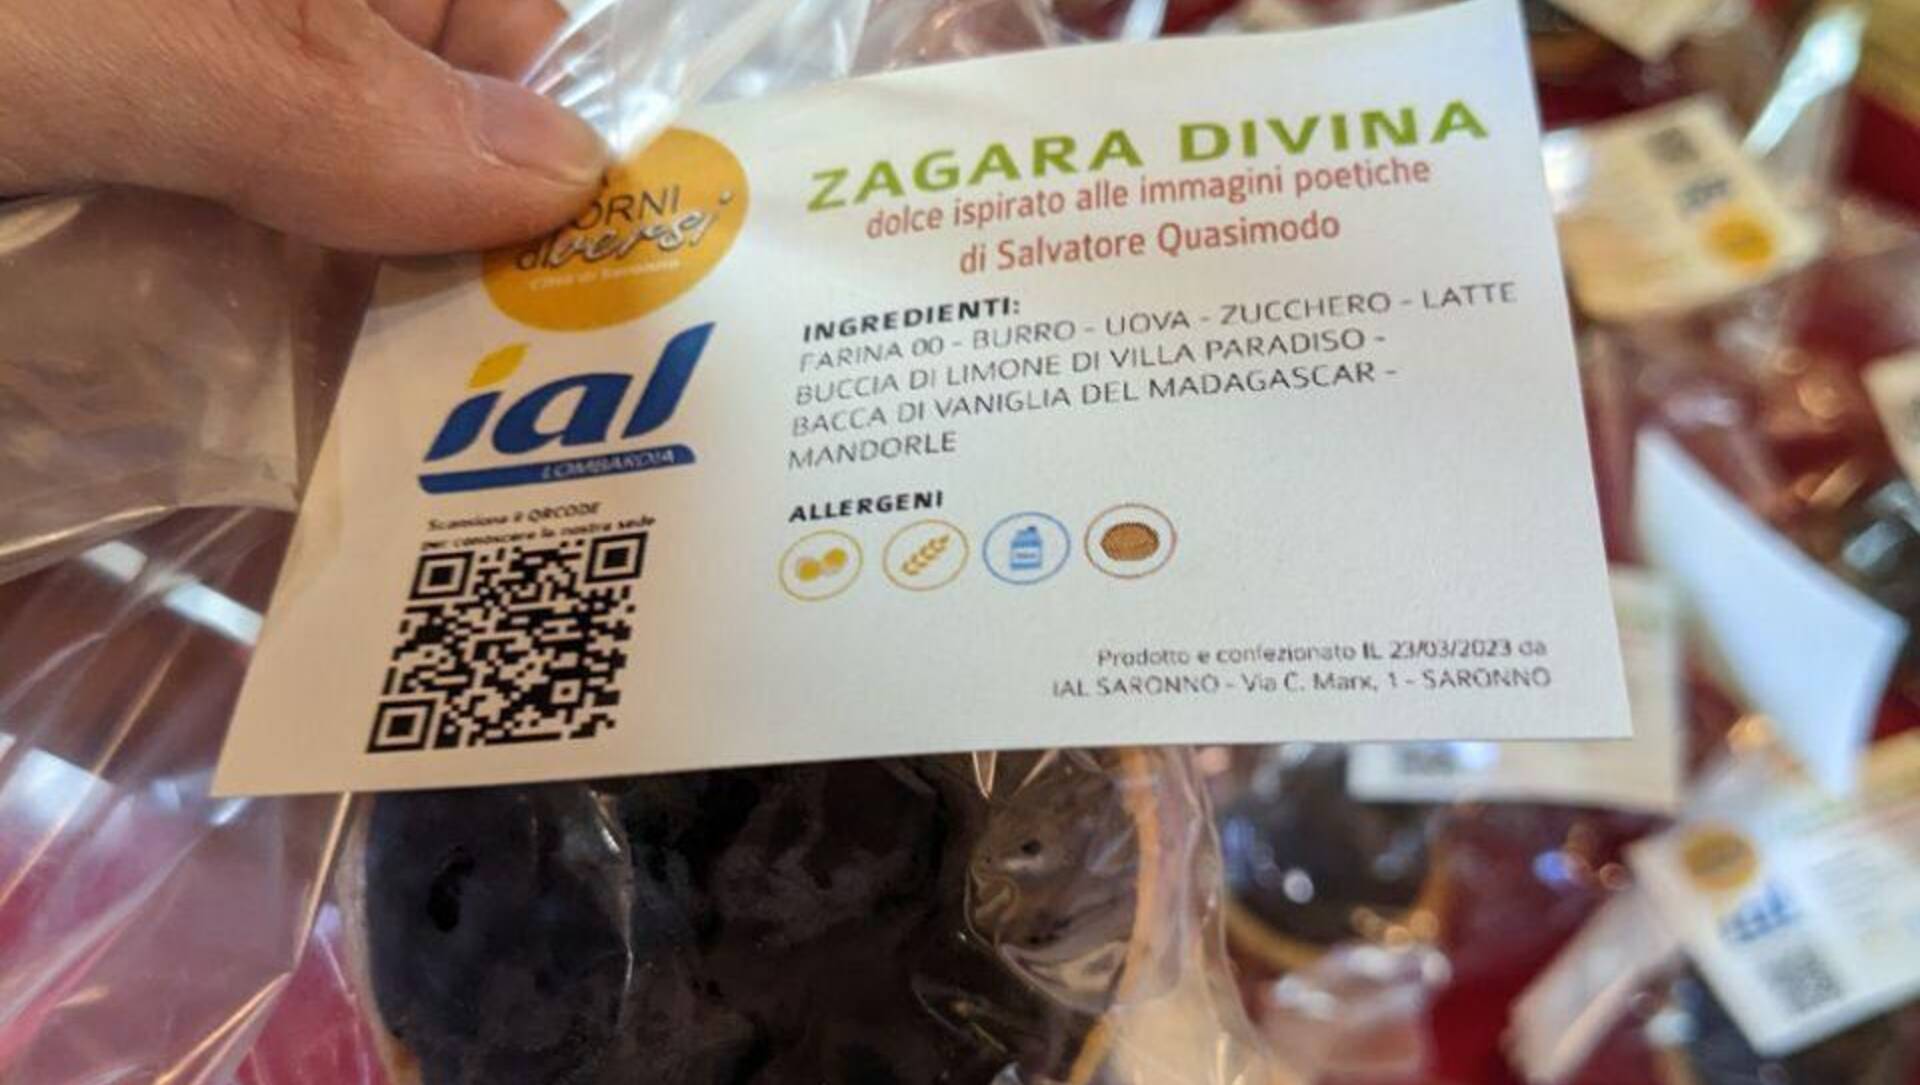 Zagara divina: il dolce “poetico” preparato dallo Ial per il Festival della poesia